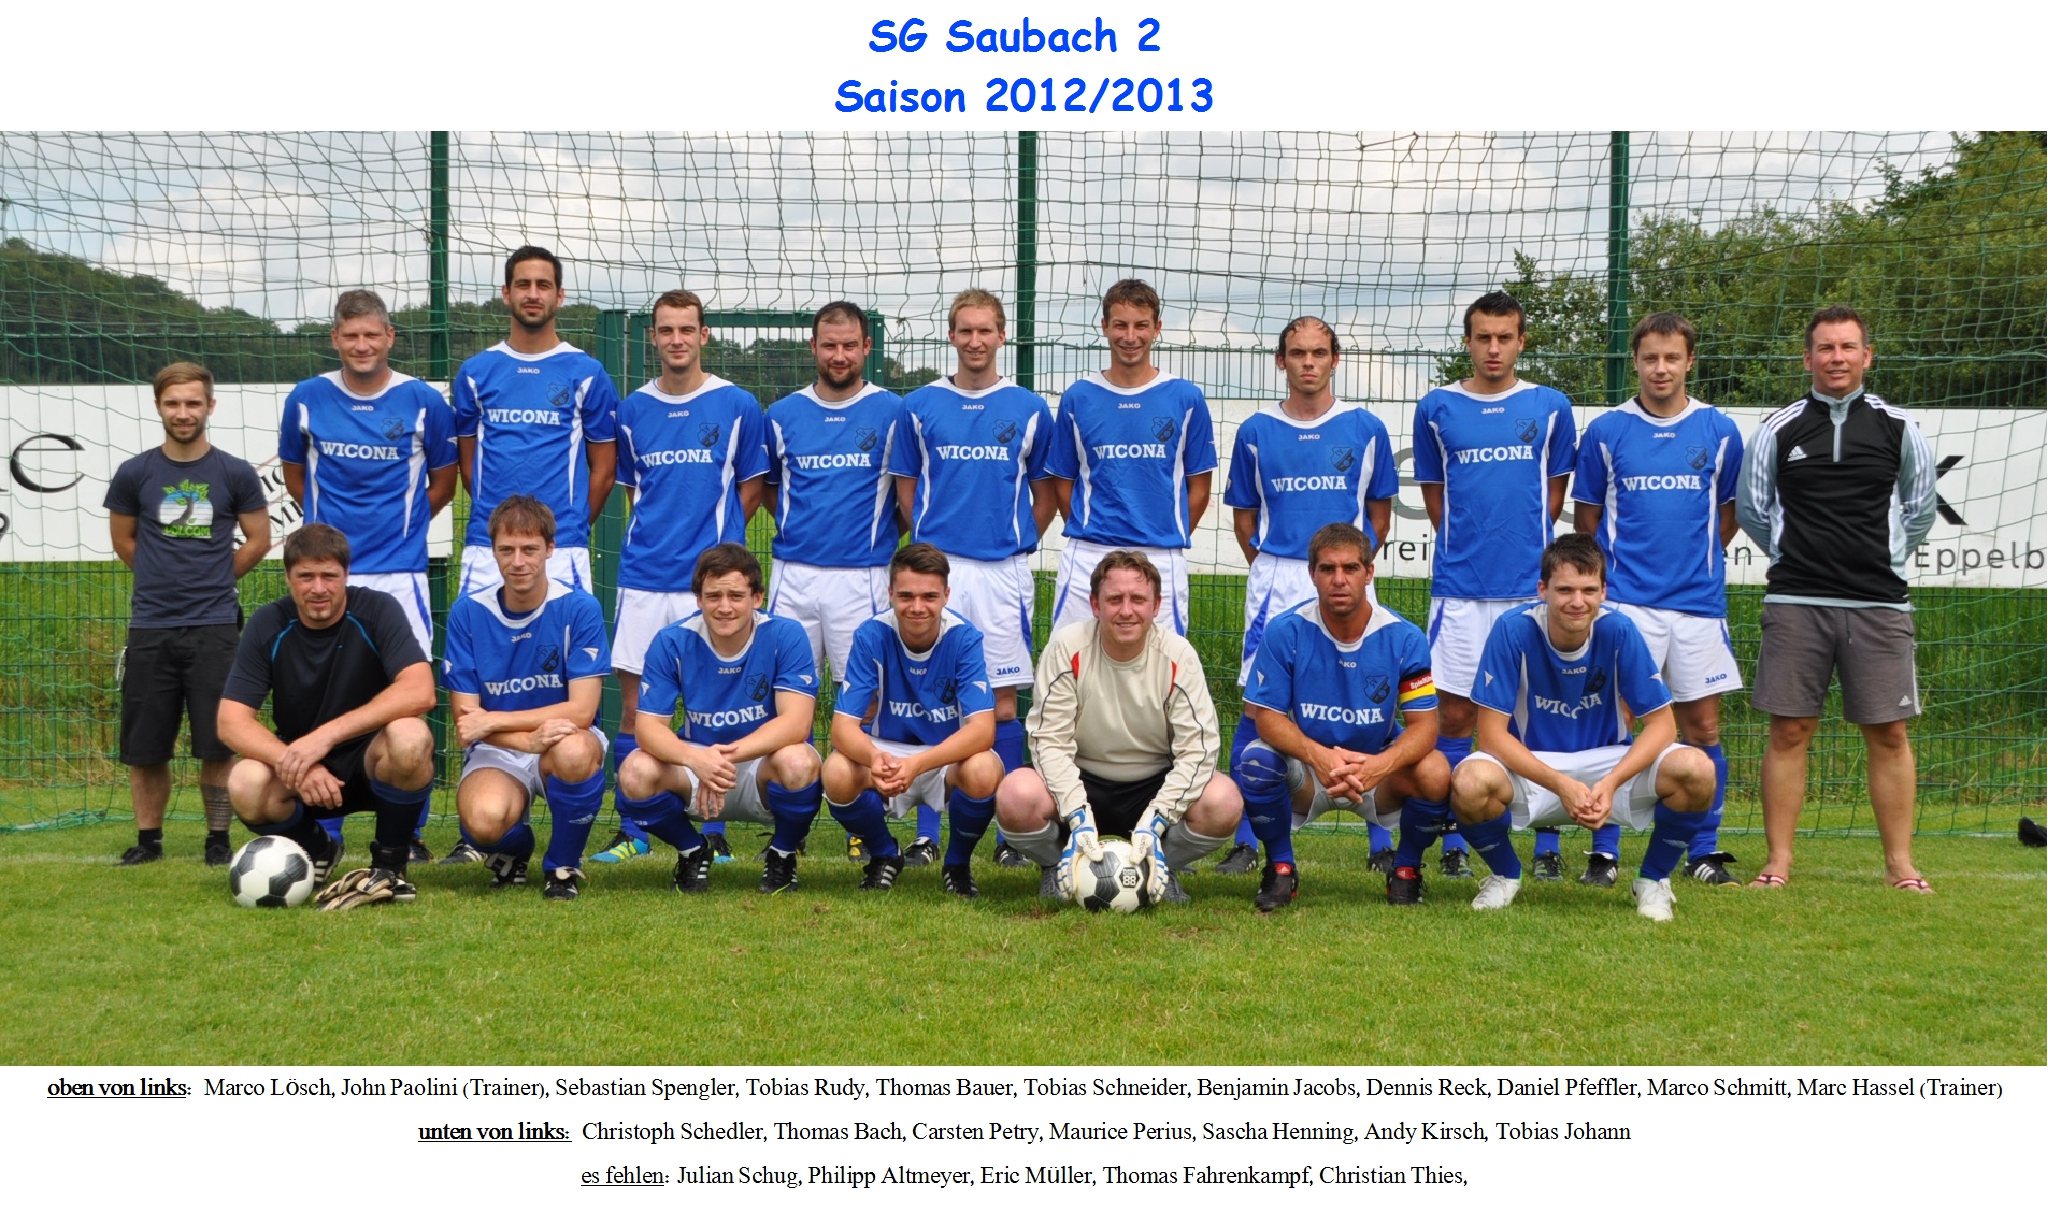 Mannschaftsfoto/Teamfoto von SG Saubach 2